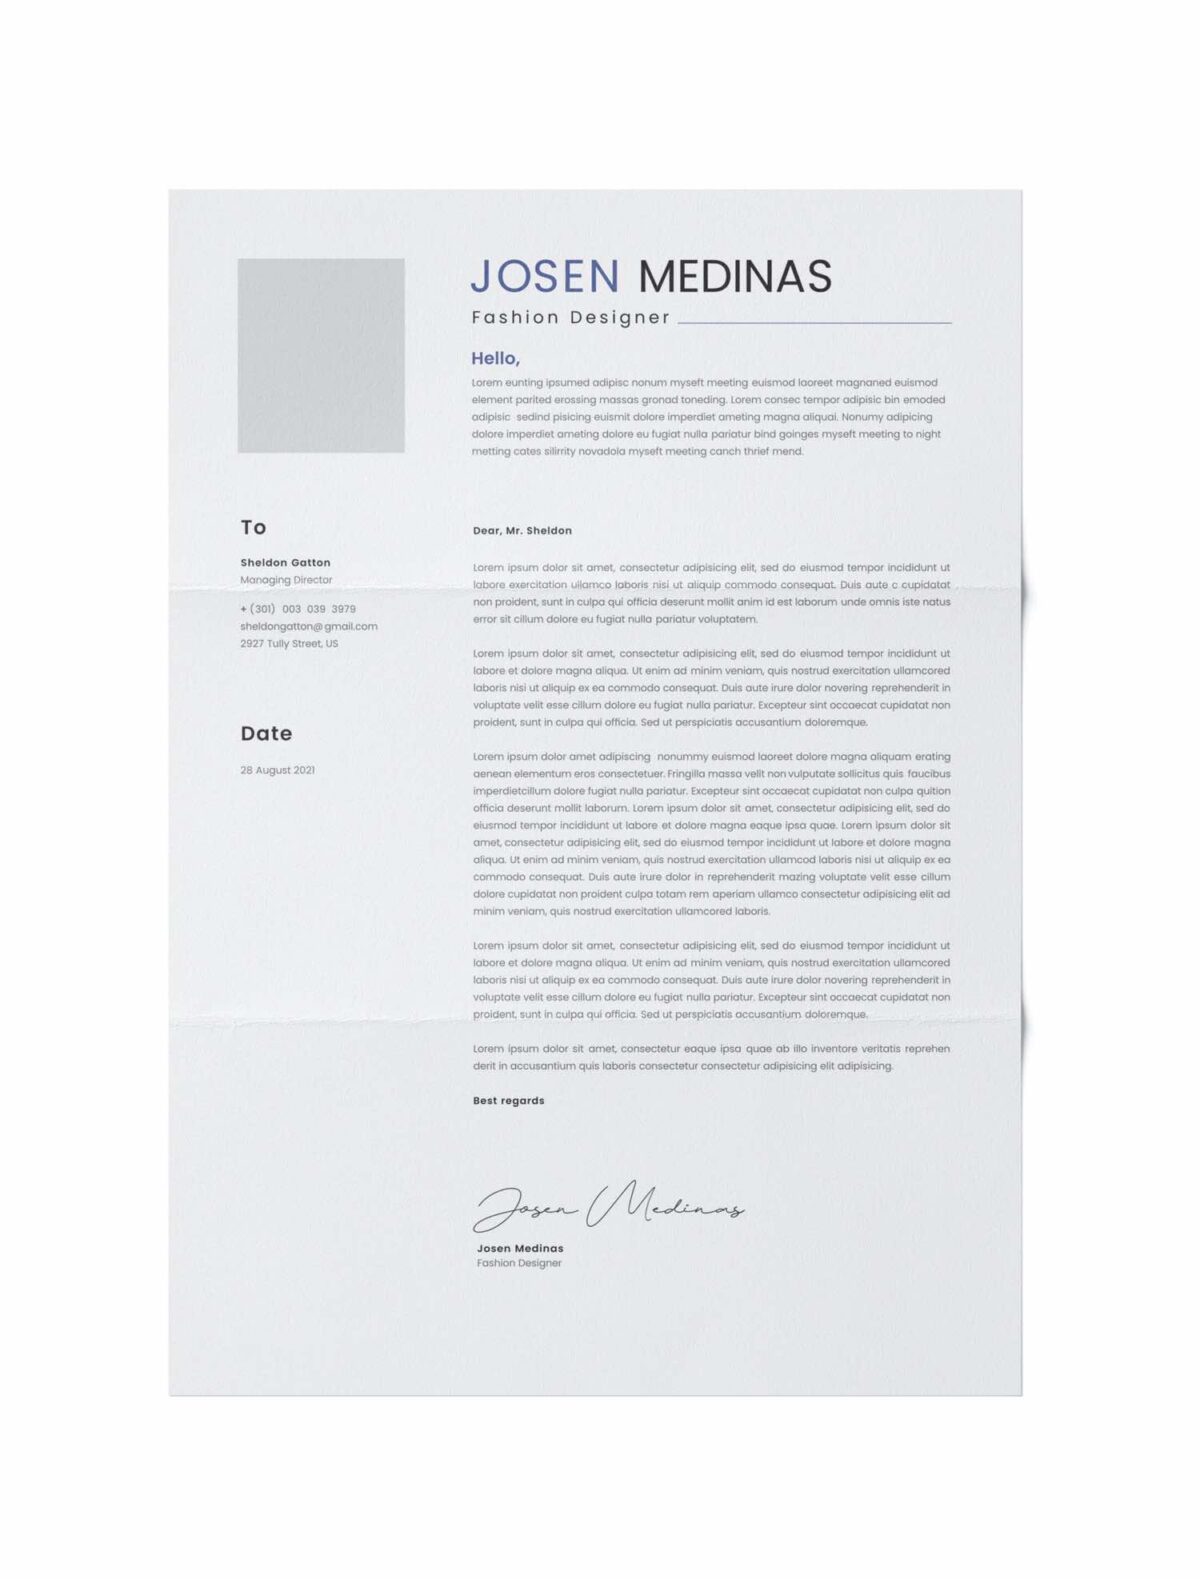 CV #9 Josen Medinas